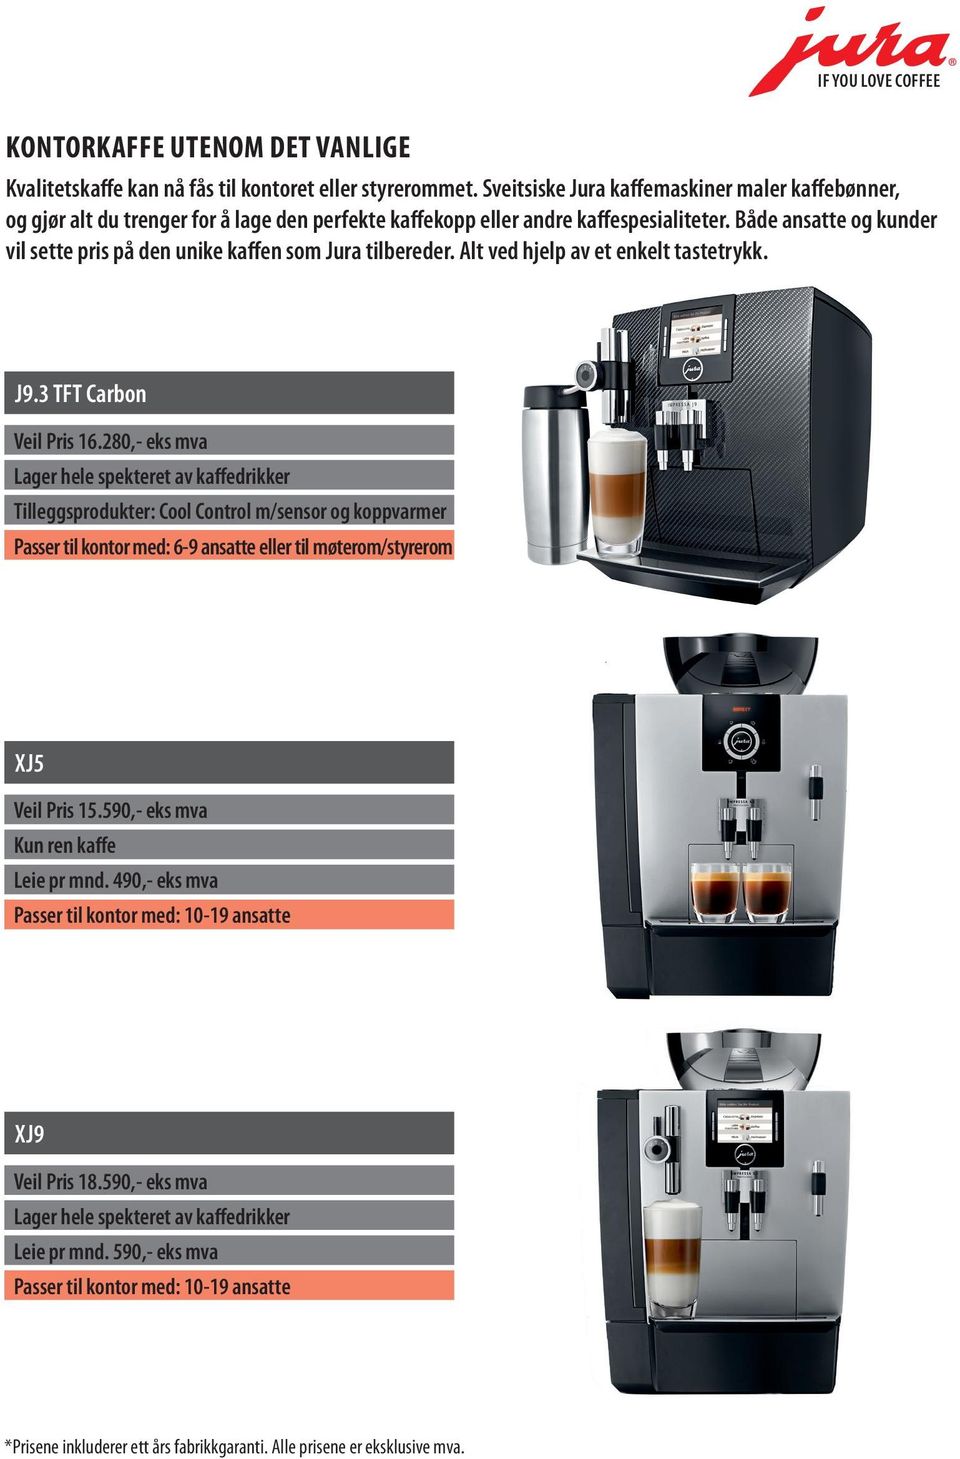 Både ansatte og kunder vil sette pris på den unike kaffen som Jura tilbereder. Alt ved hjelp av et enkelt tastetrykk. J9.3 TFT Carbon Veil Pris 16.